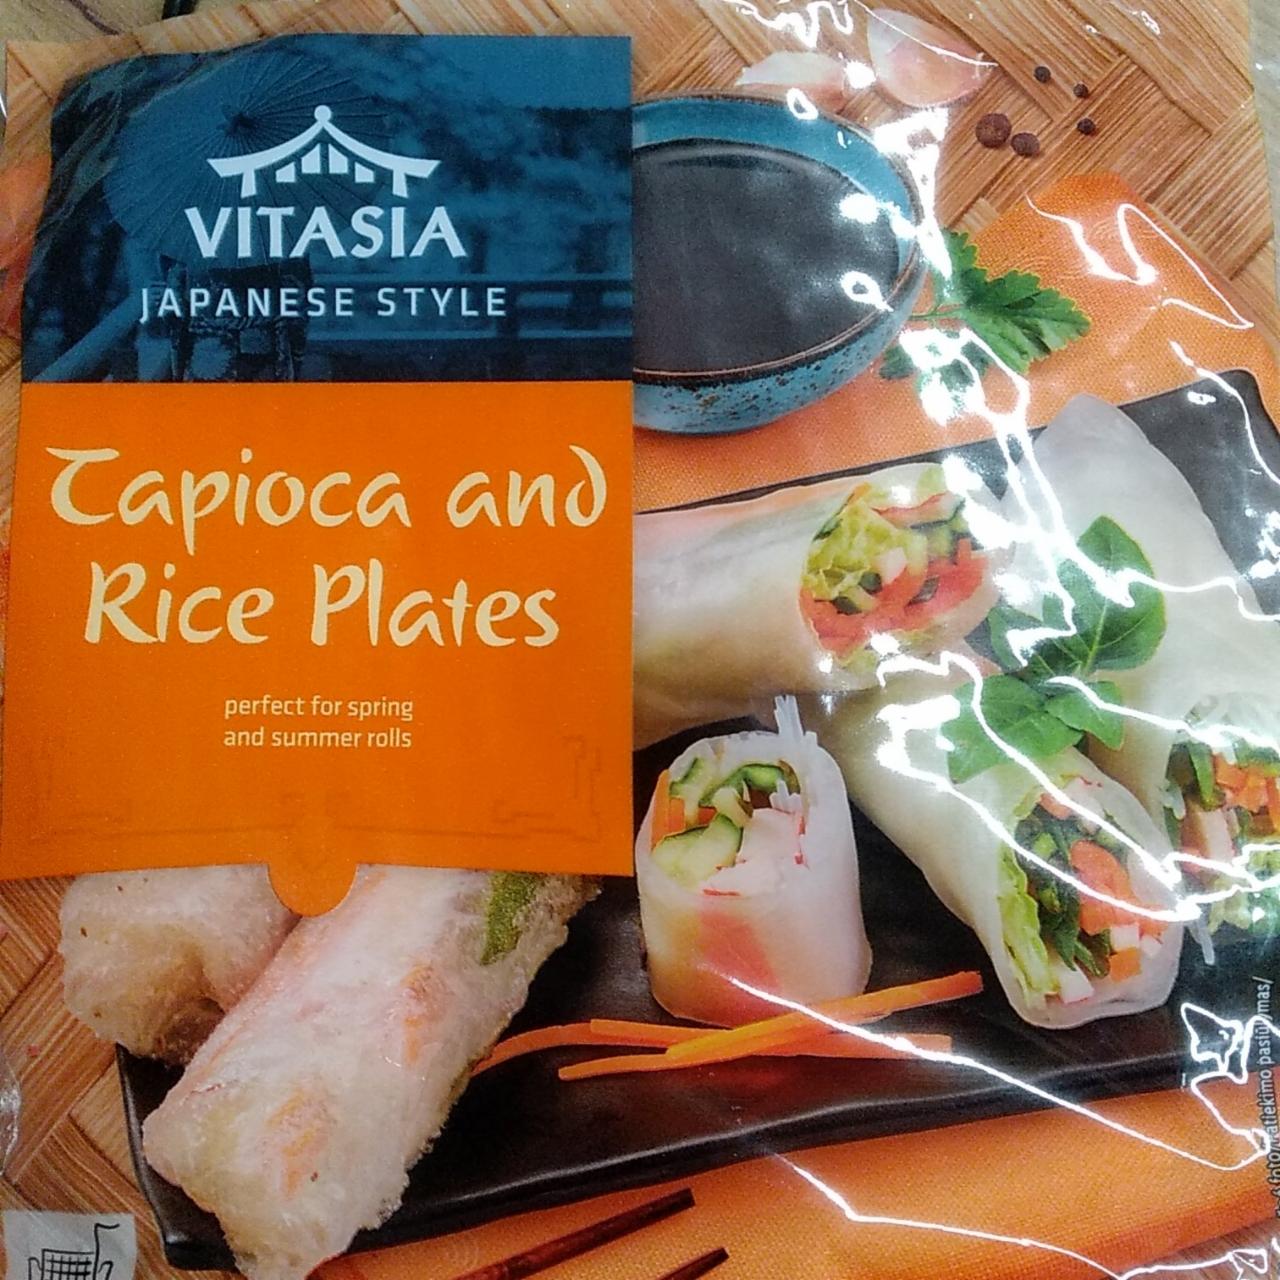 Fotografie - Tapioka and Rice Plates Vitasia